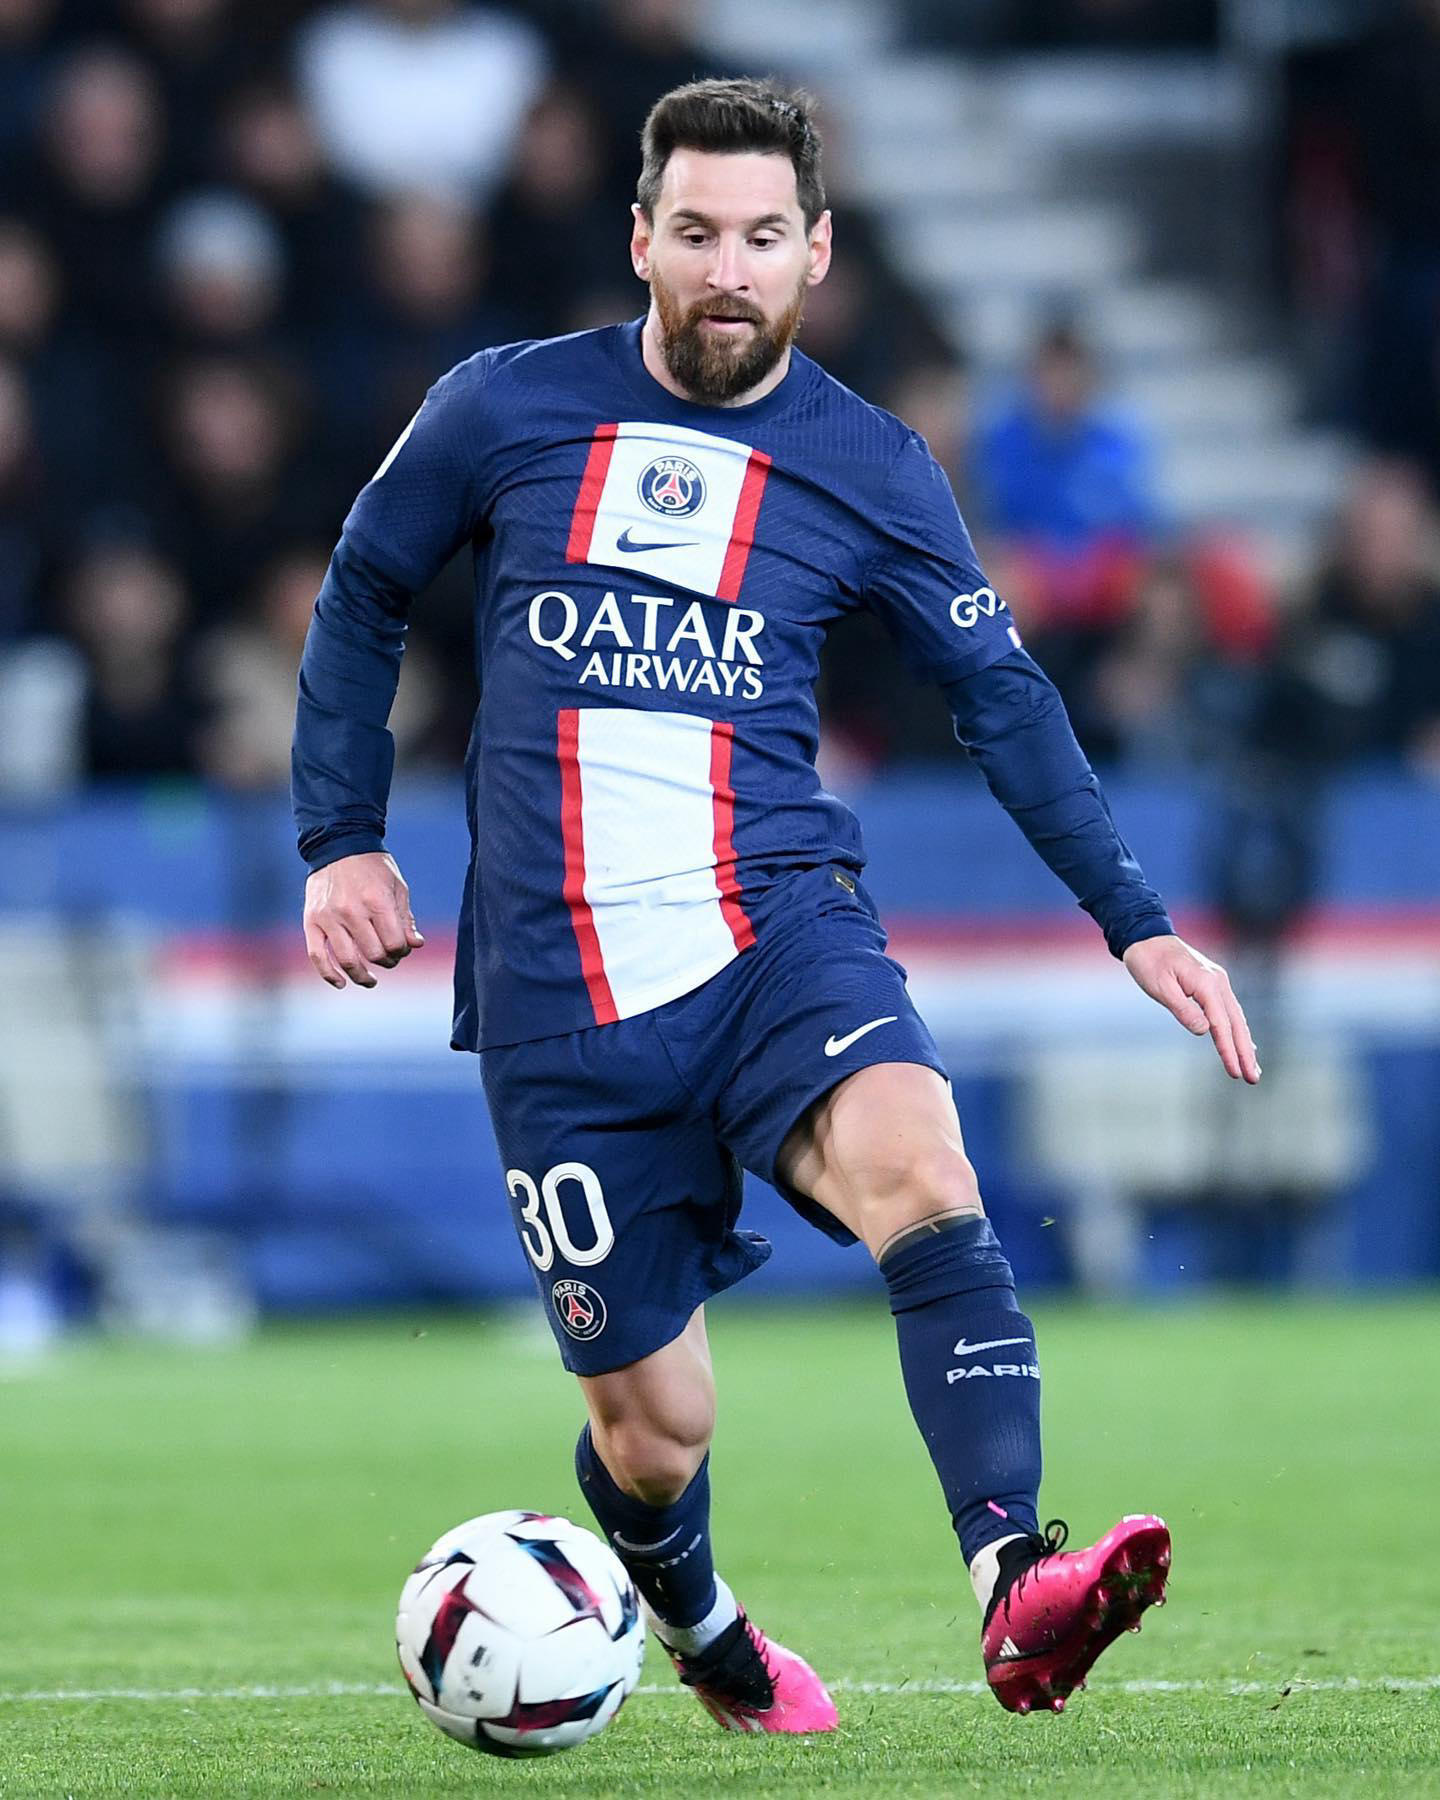 Actu Foot - Al Hilal 🇸🇦, le grand rival d’Al Nassr, souhaiterait s’offrir Lionel Messi 🇦🇷 et ser